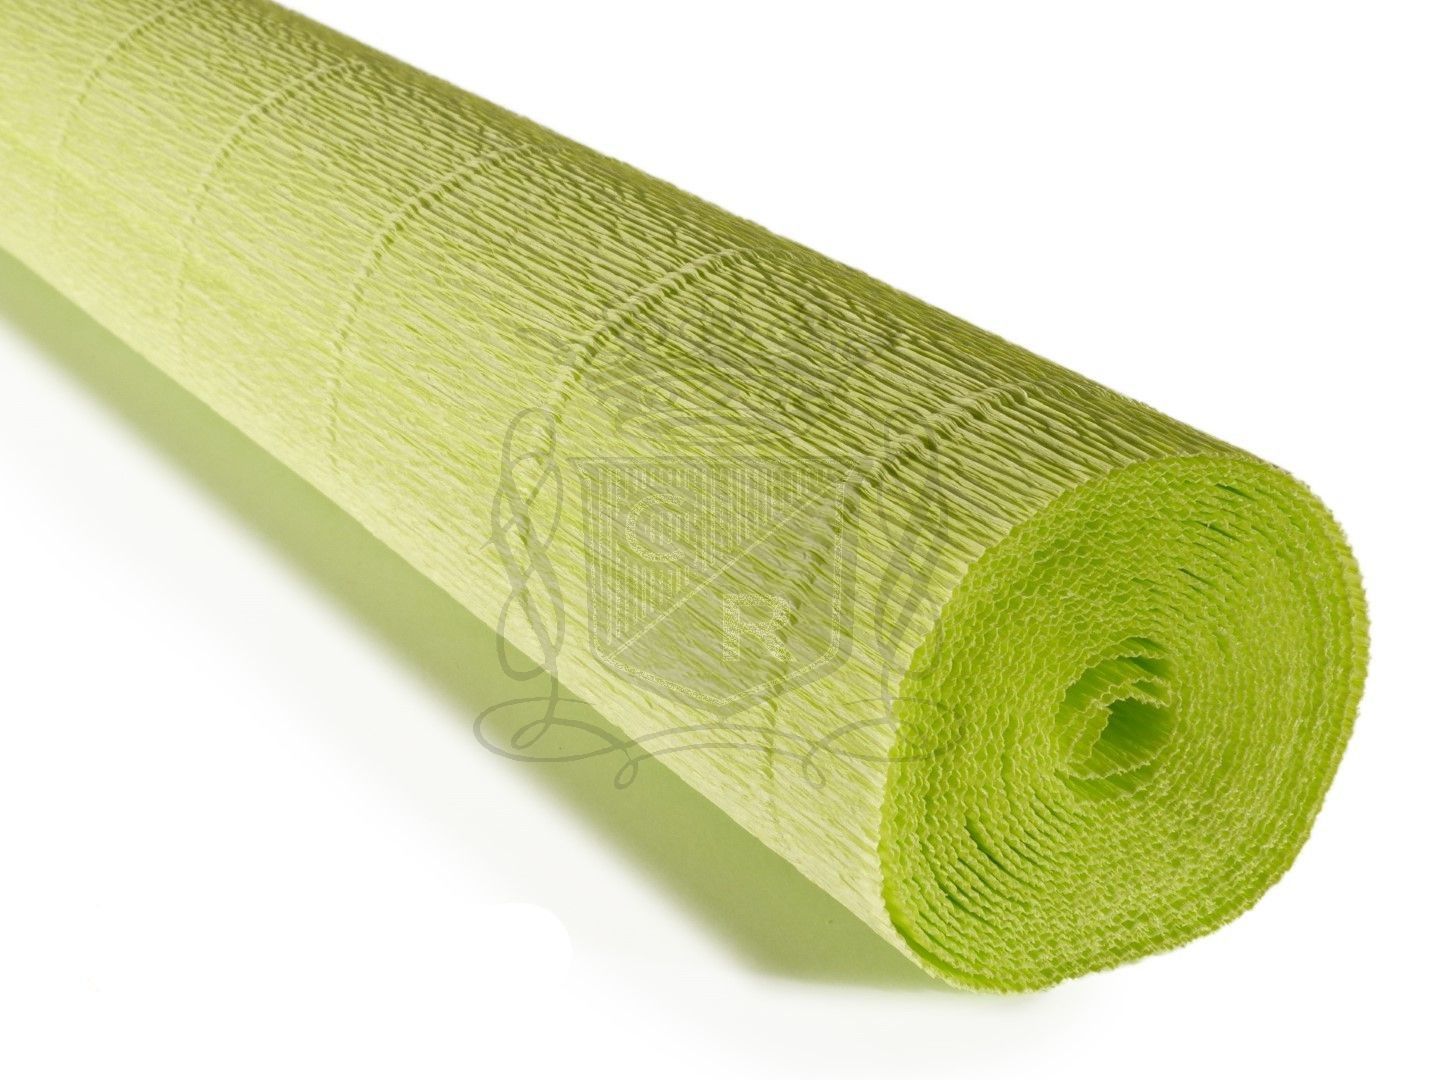 İtalyan Krapon Kağıdı No:558 - Fosfor Yeşil - Acid Green 180 gr.50X250 cm